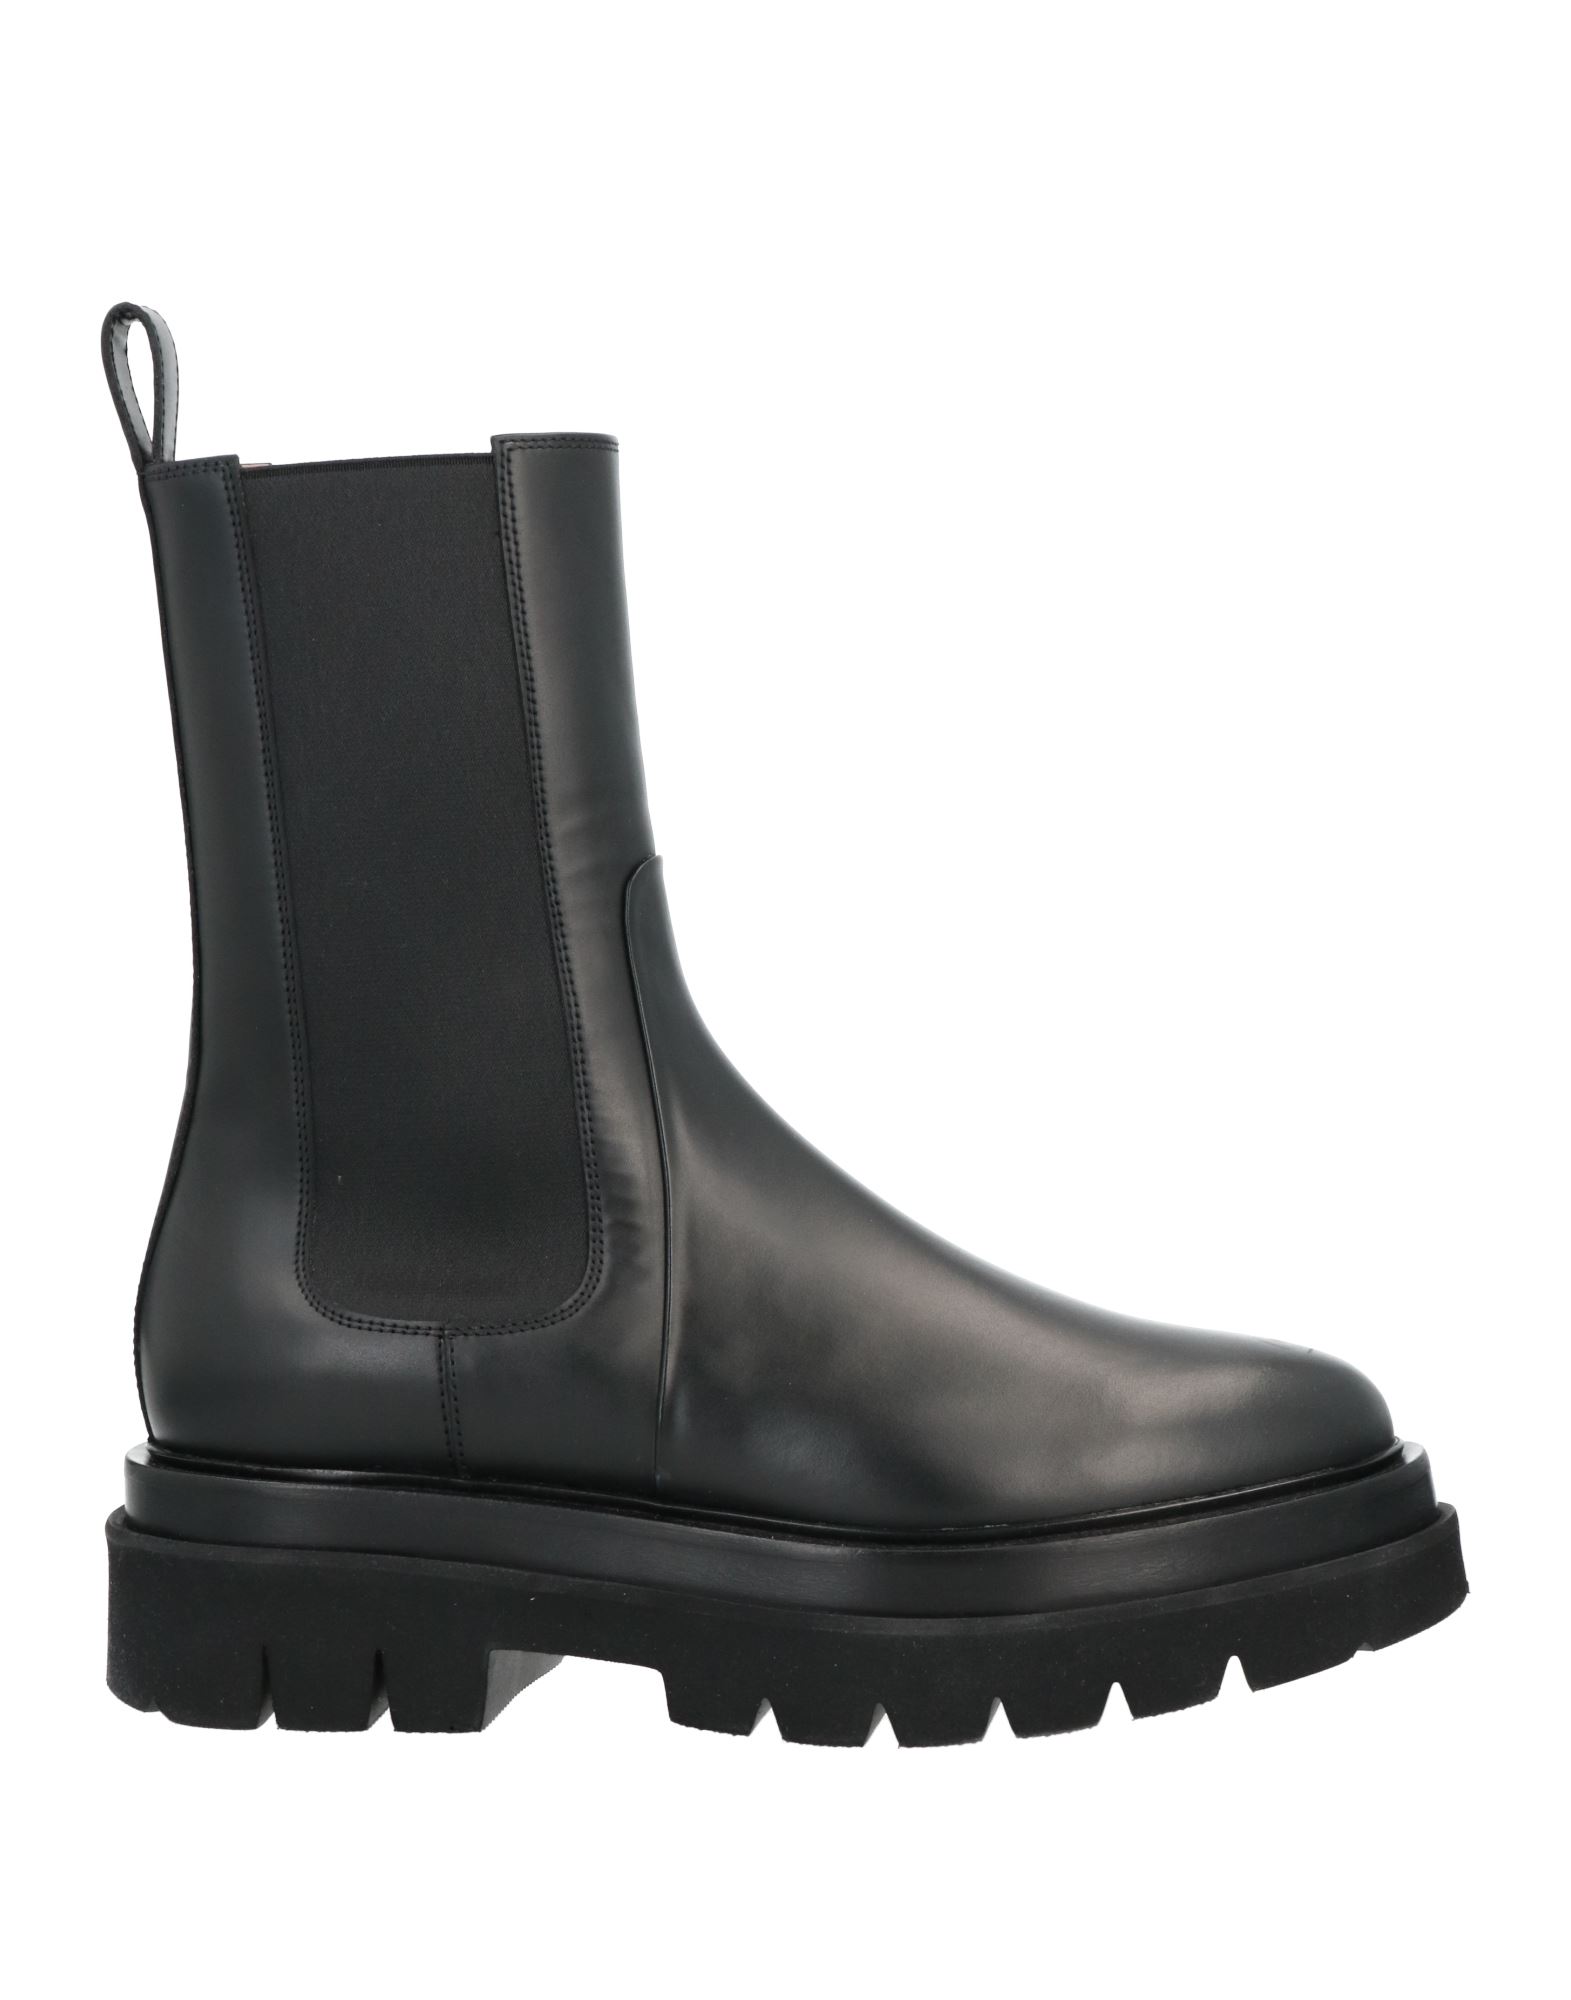 Shop Santoni Woman Ankle Boots Black Size 7.5 Soft Leather